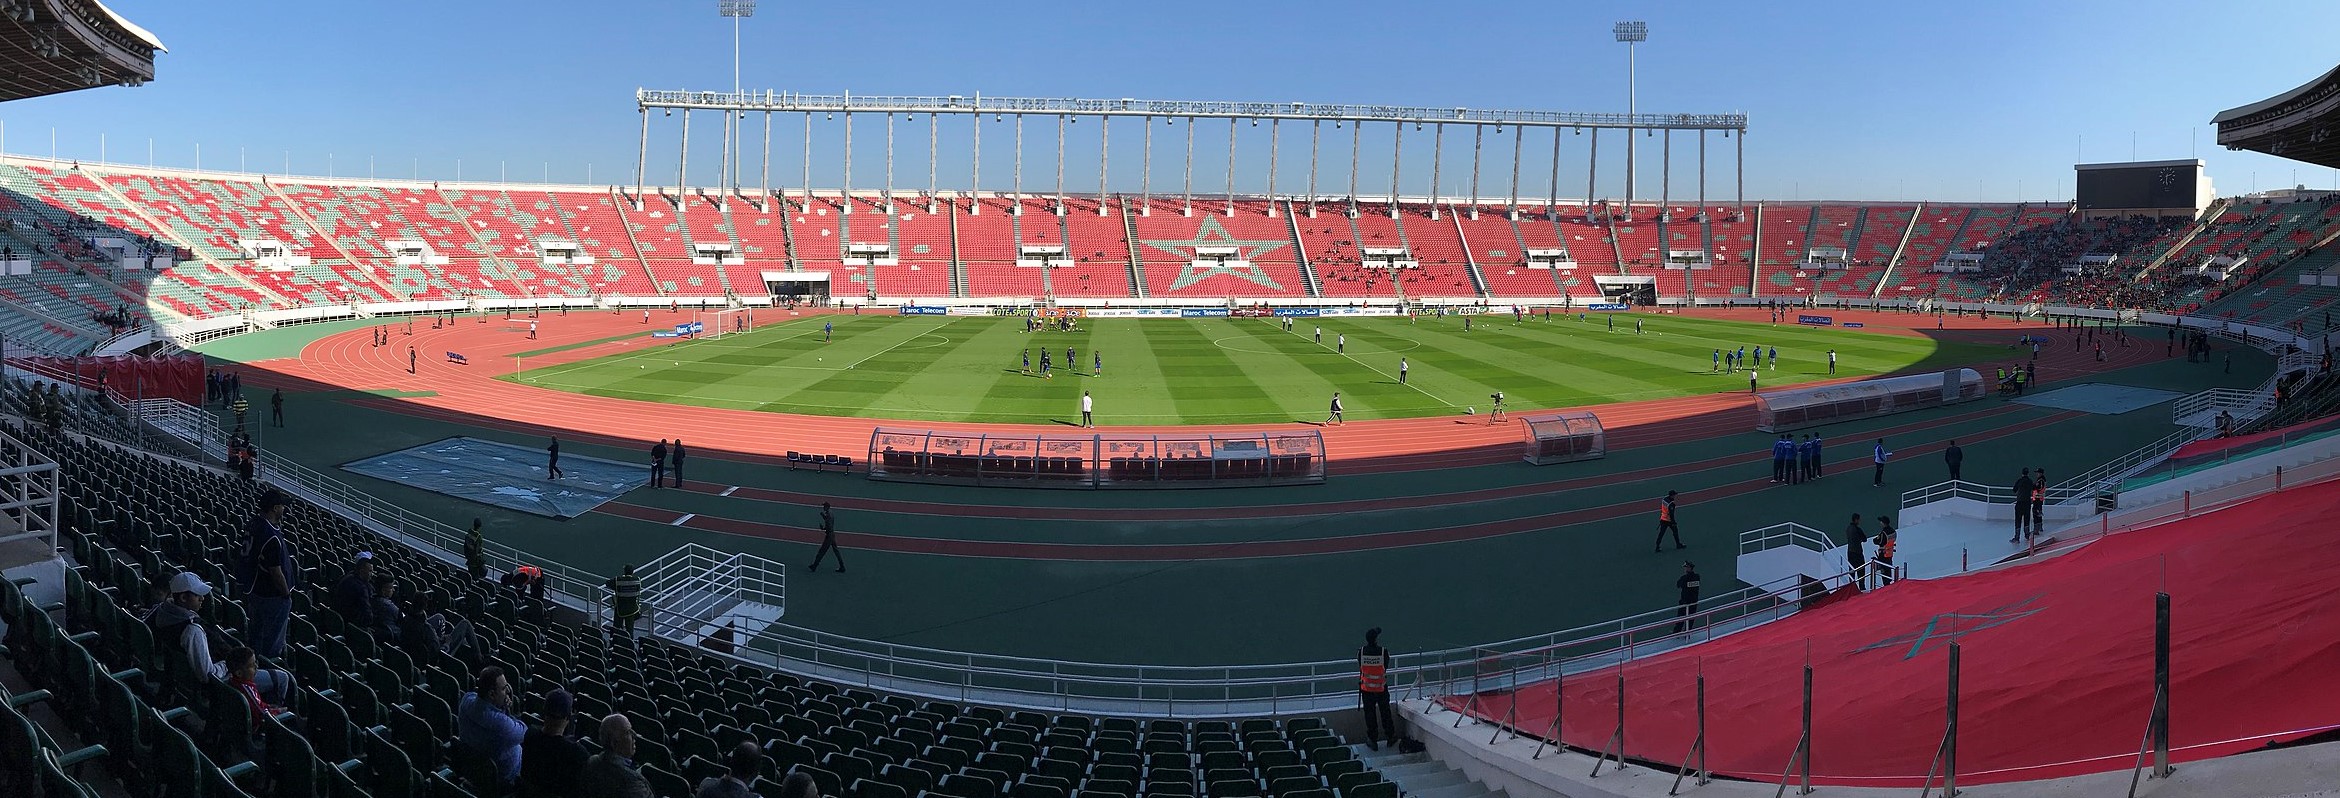 Estadio Príncipe Moulay Abdellah, Rabat, Marruecos